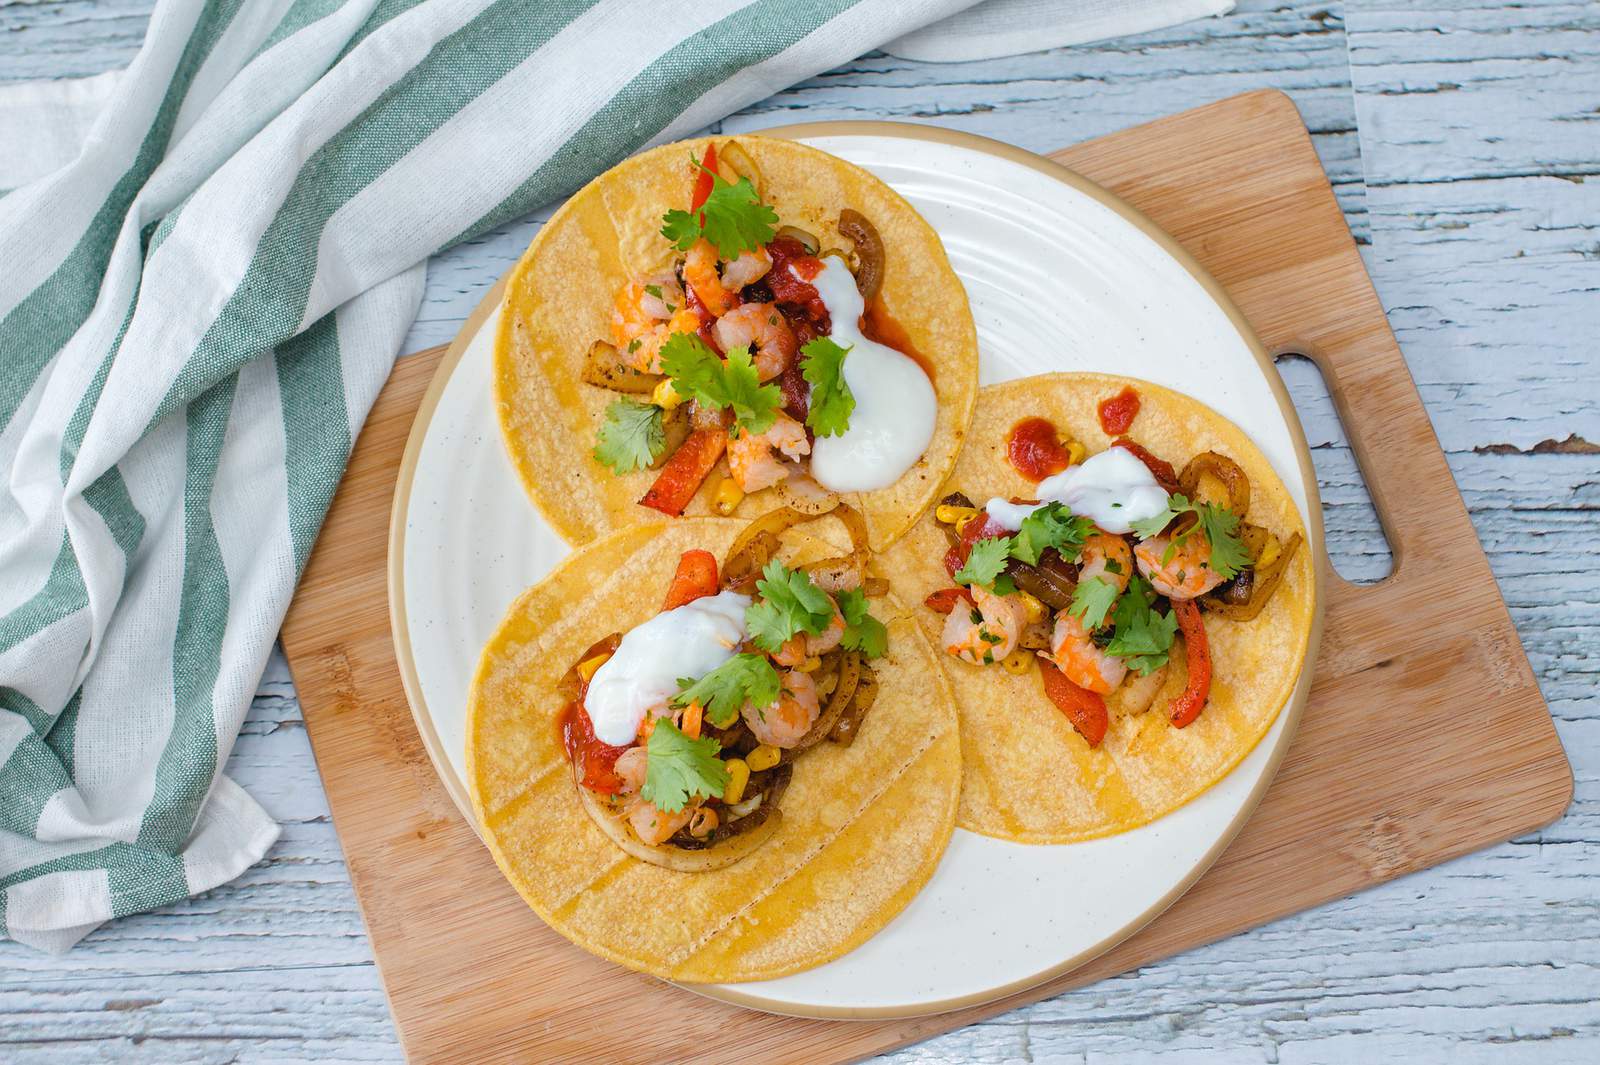 Publix recipe: Southwest shrimp taco salad with avocado ranch